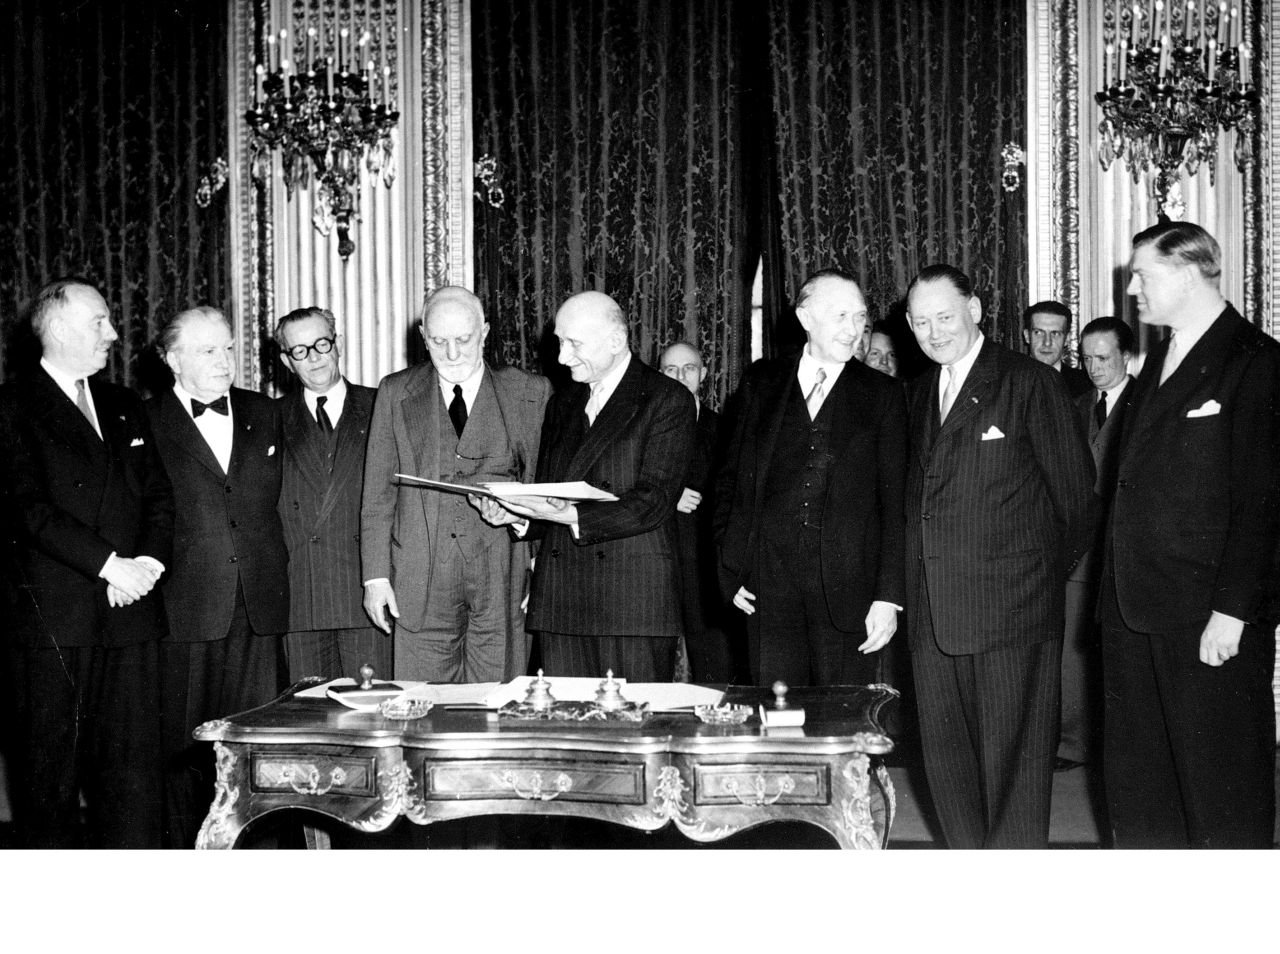 Schwarz-Weiß-Foto. Unterzeichner des EGKS-Vertrags stehen hinter einem reich-verzierten verschnörkelten Tisch. Robert Schuman hält ein Dokument in den Händen. Carlo Sforza - neben ihm stehend - schaut hinein.